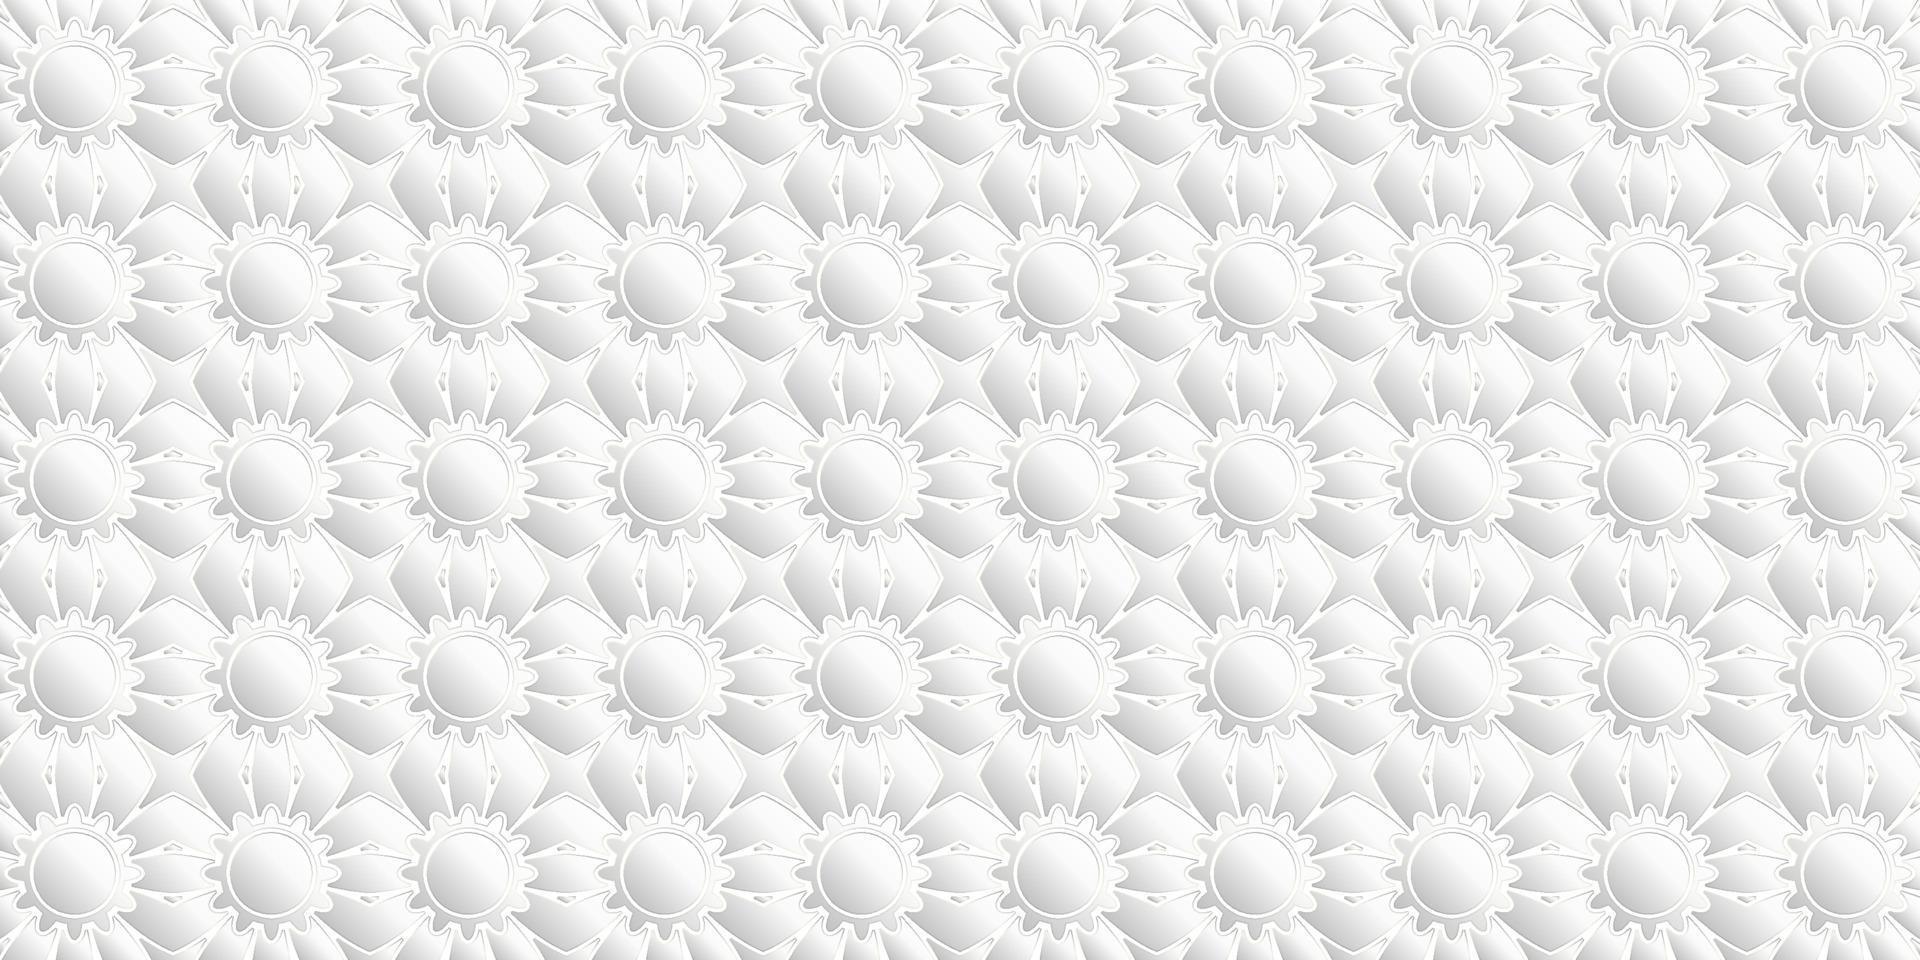 diseño de patrón geométrico moderno floral fondo blanco y gris vector